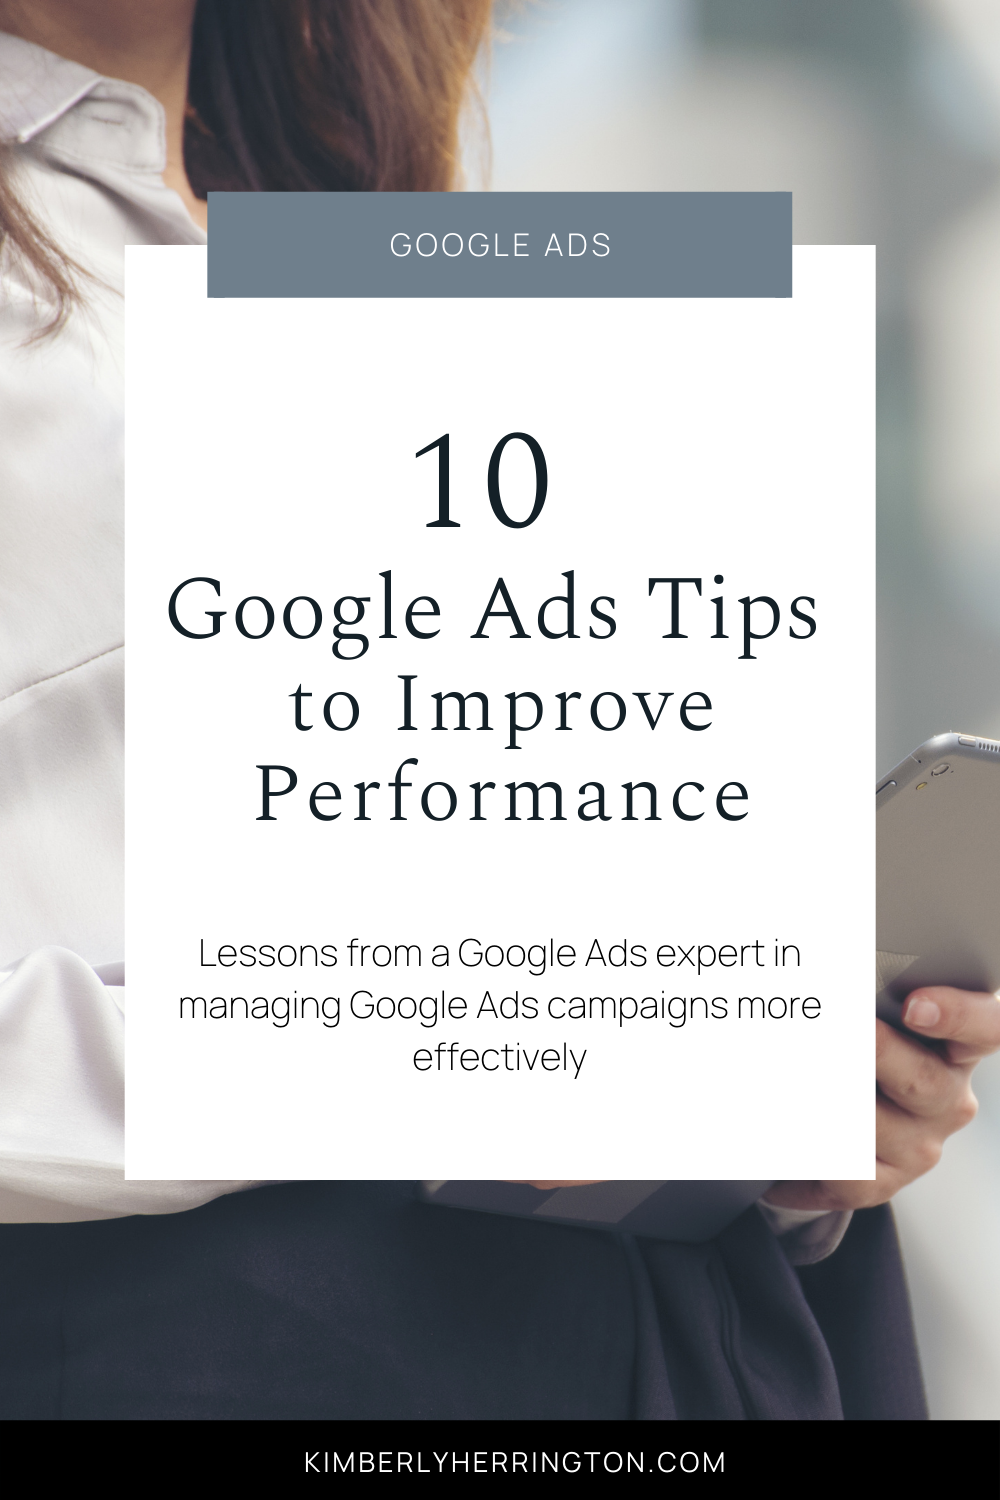 Top Google Ads Tips From An Expert